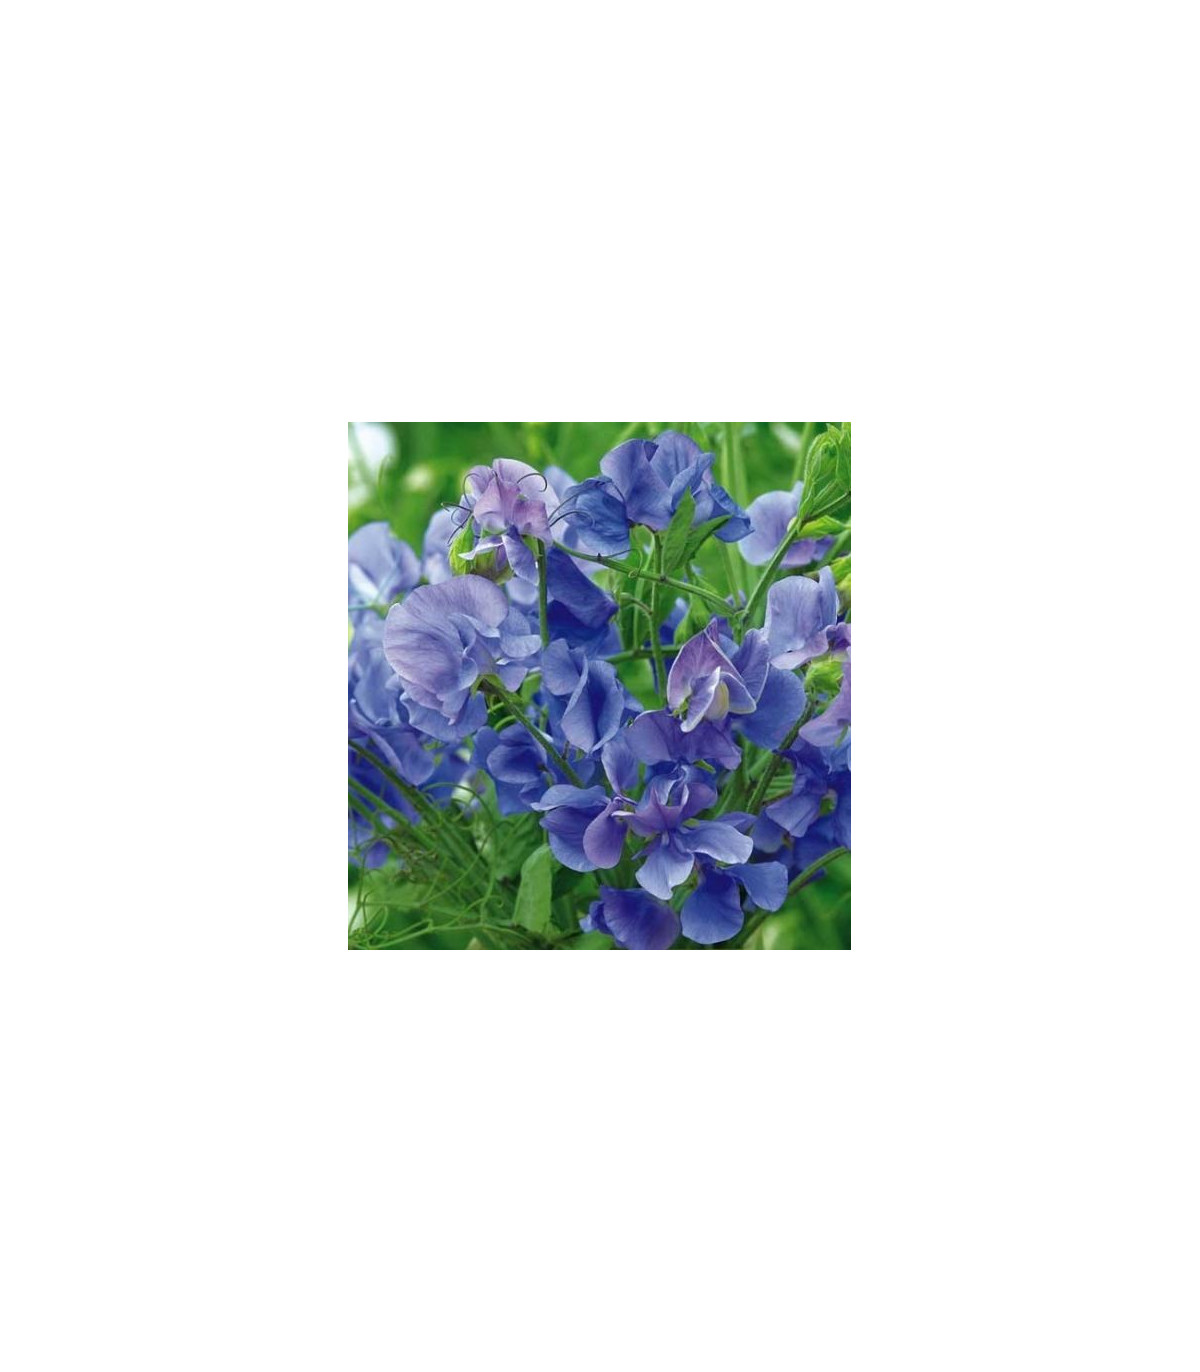 Hrachor voňavý kráľovský modrý - Lathyrus odoratus - semená hrachora - semiačka - 20 ks